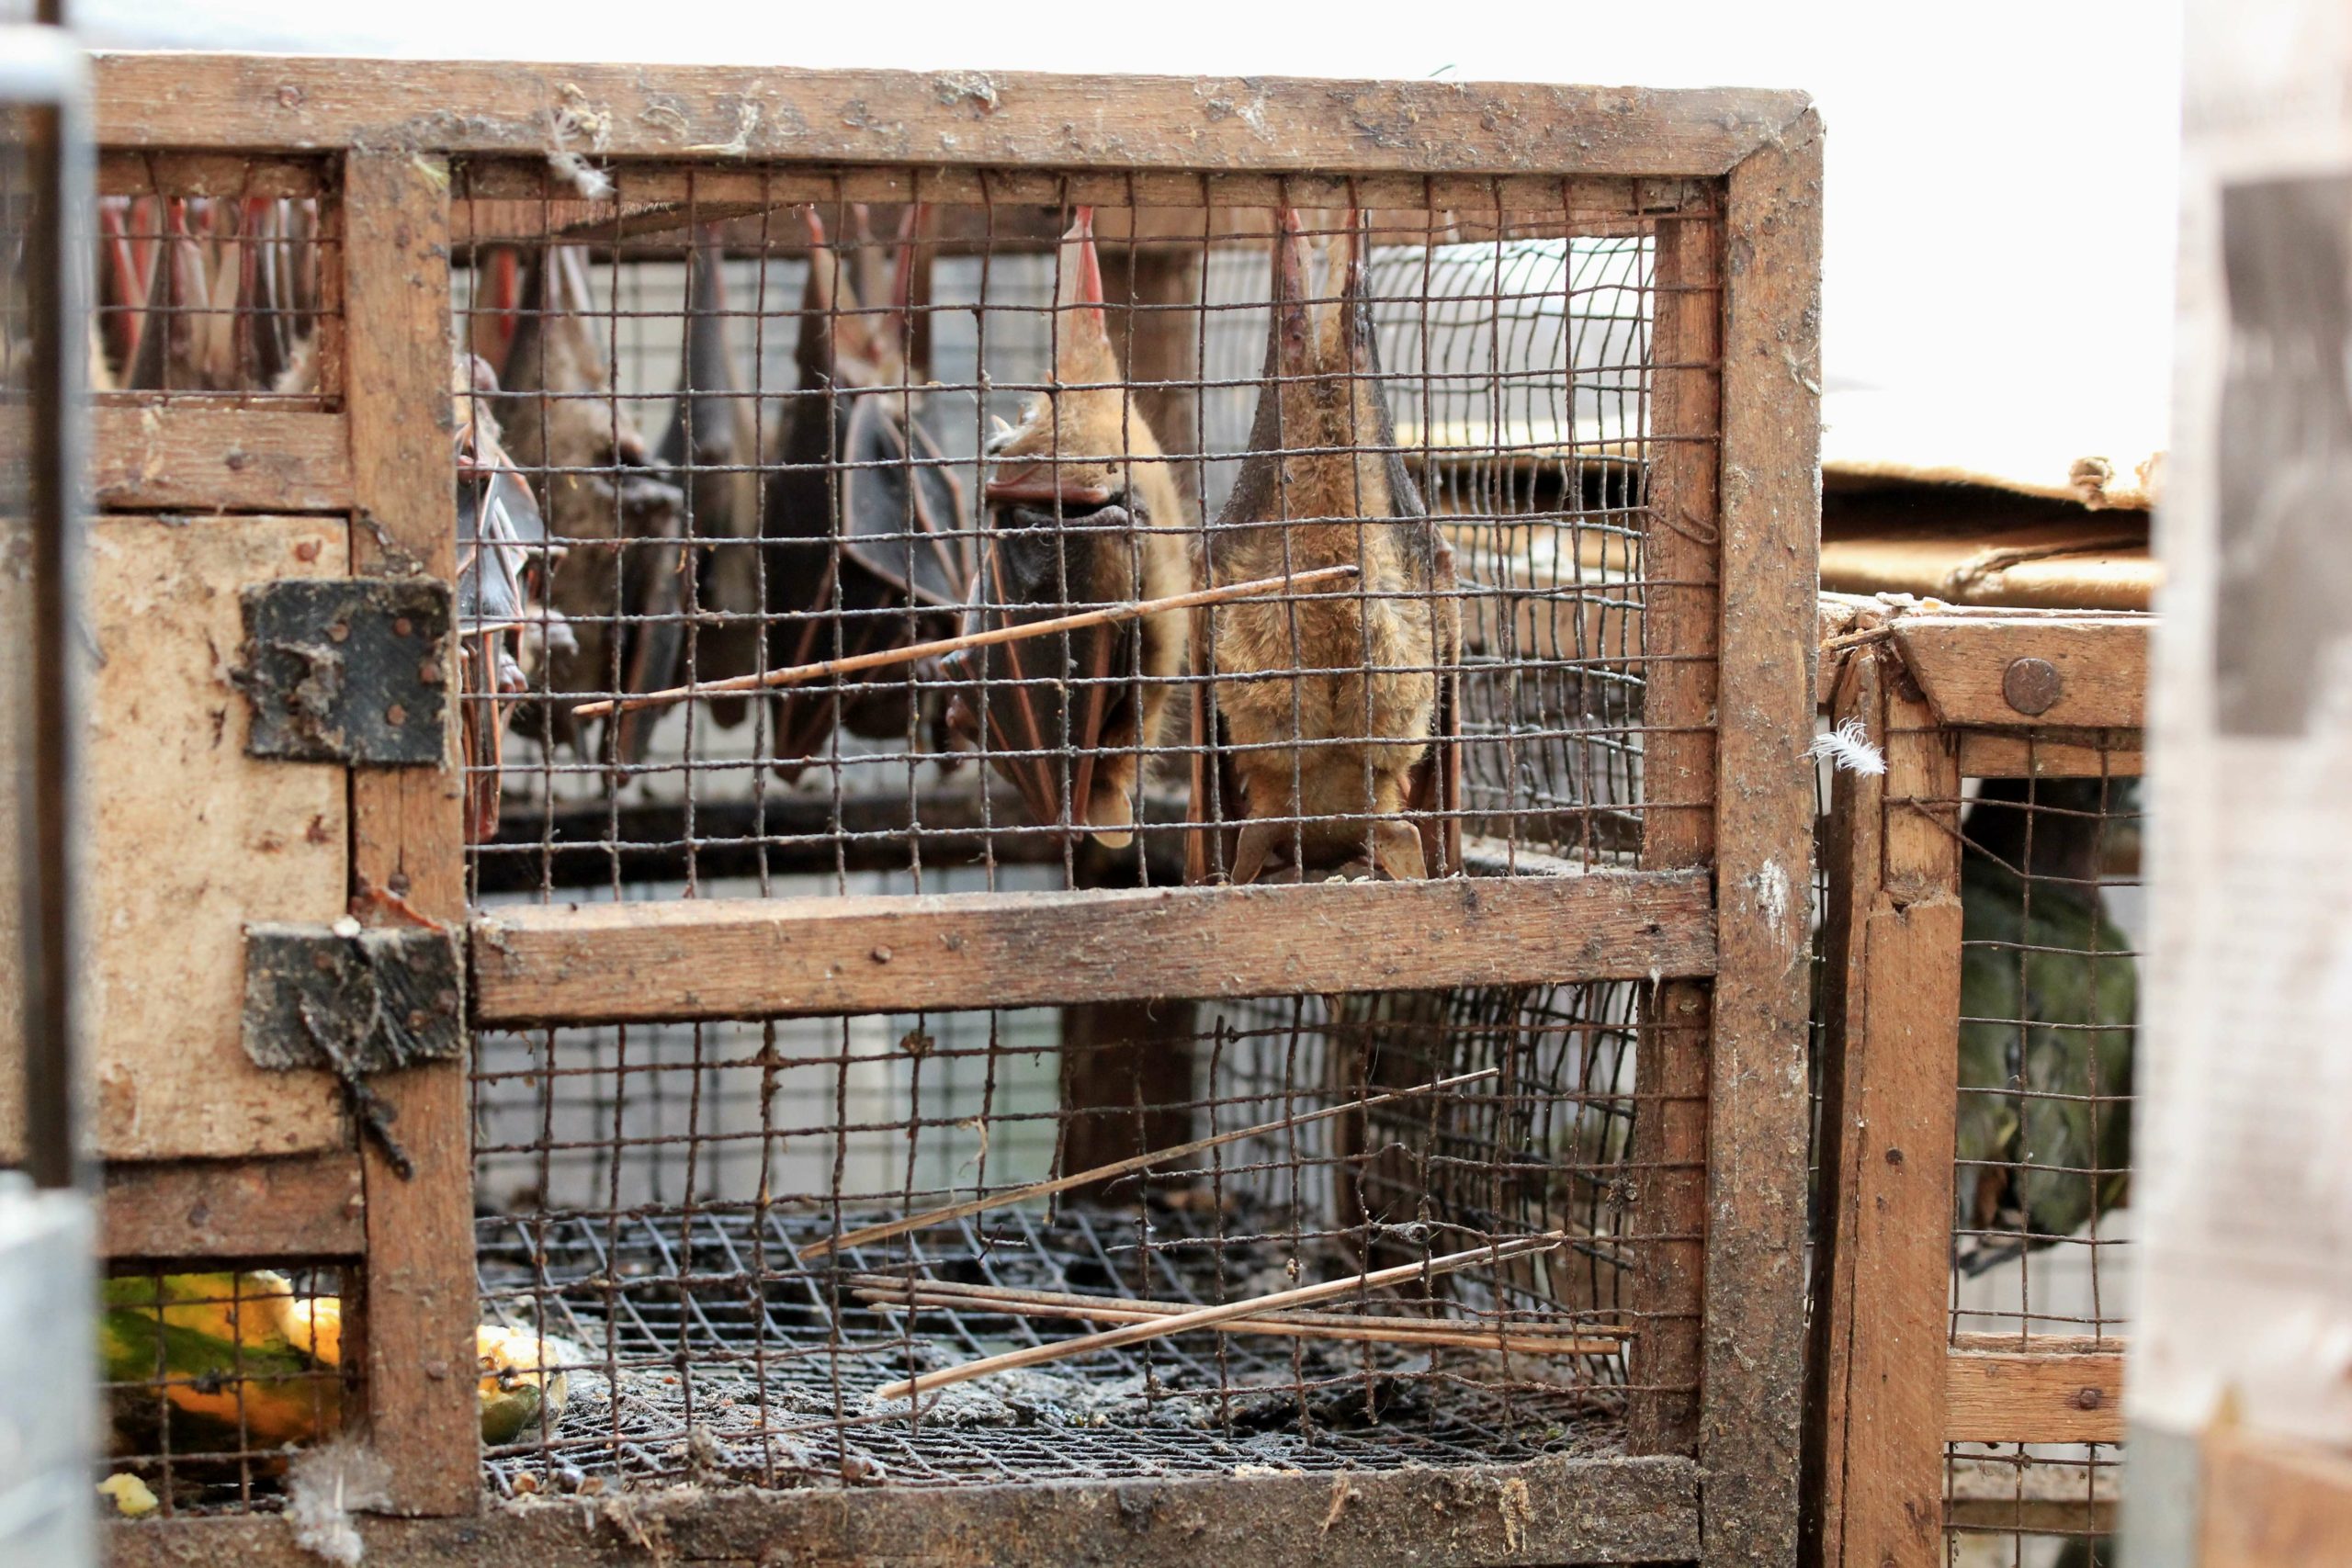 Animali vivi: stop alla vendita nei wet market. Consegnate 569 mila firme